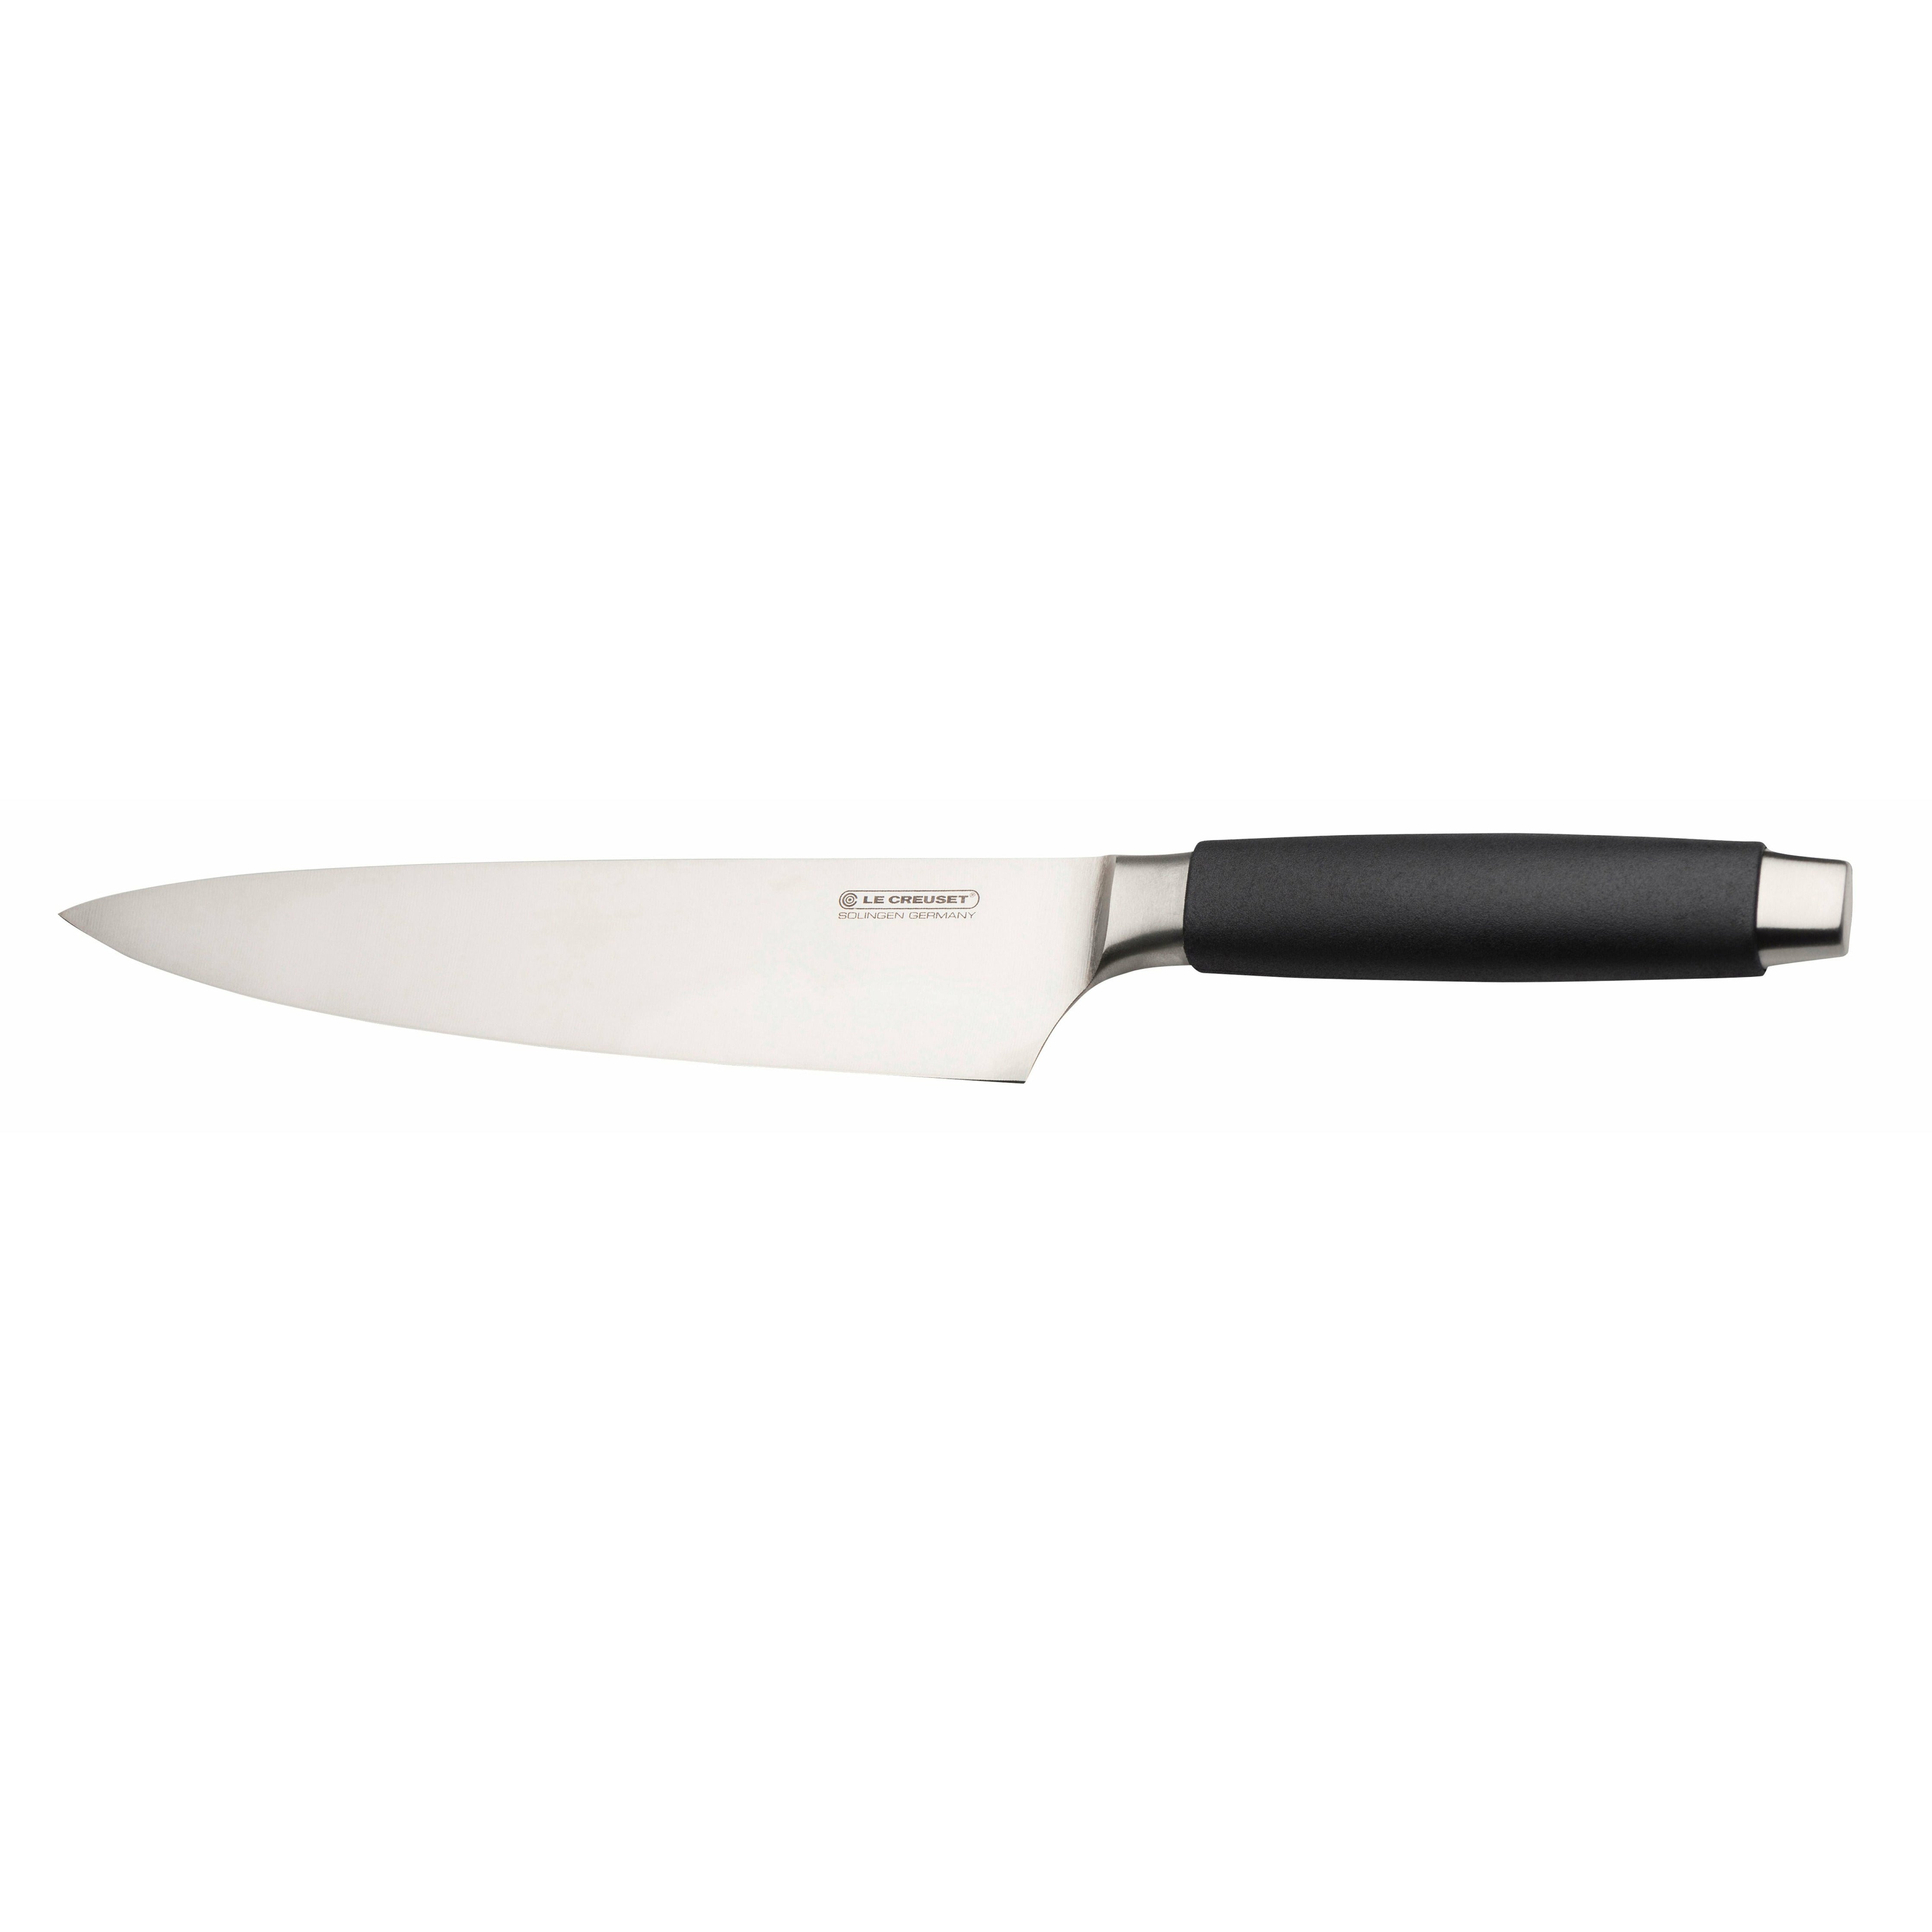 Le Creuset Chef's Knife Standard met zwart handvat, 20 cm